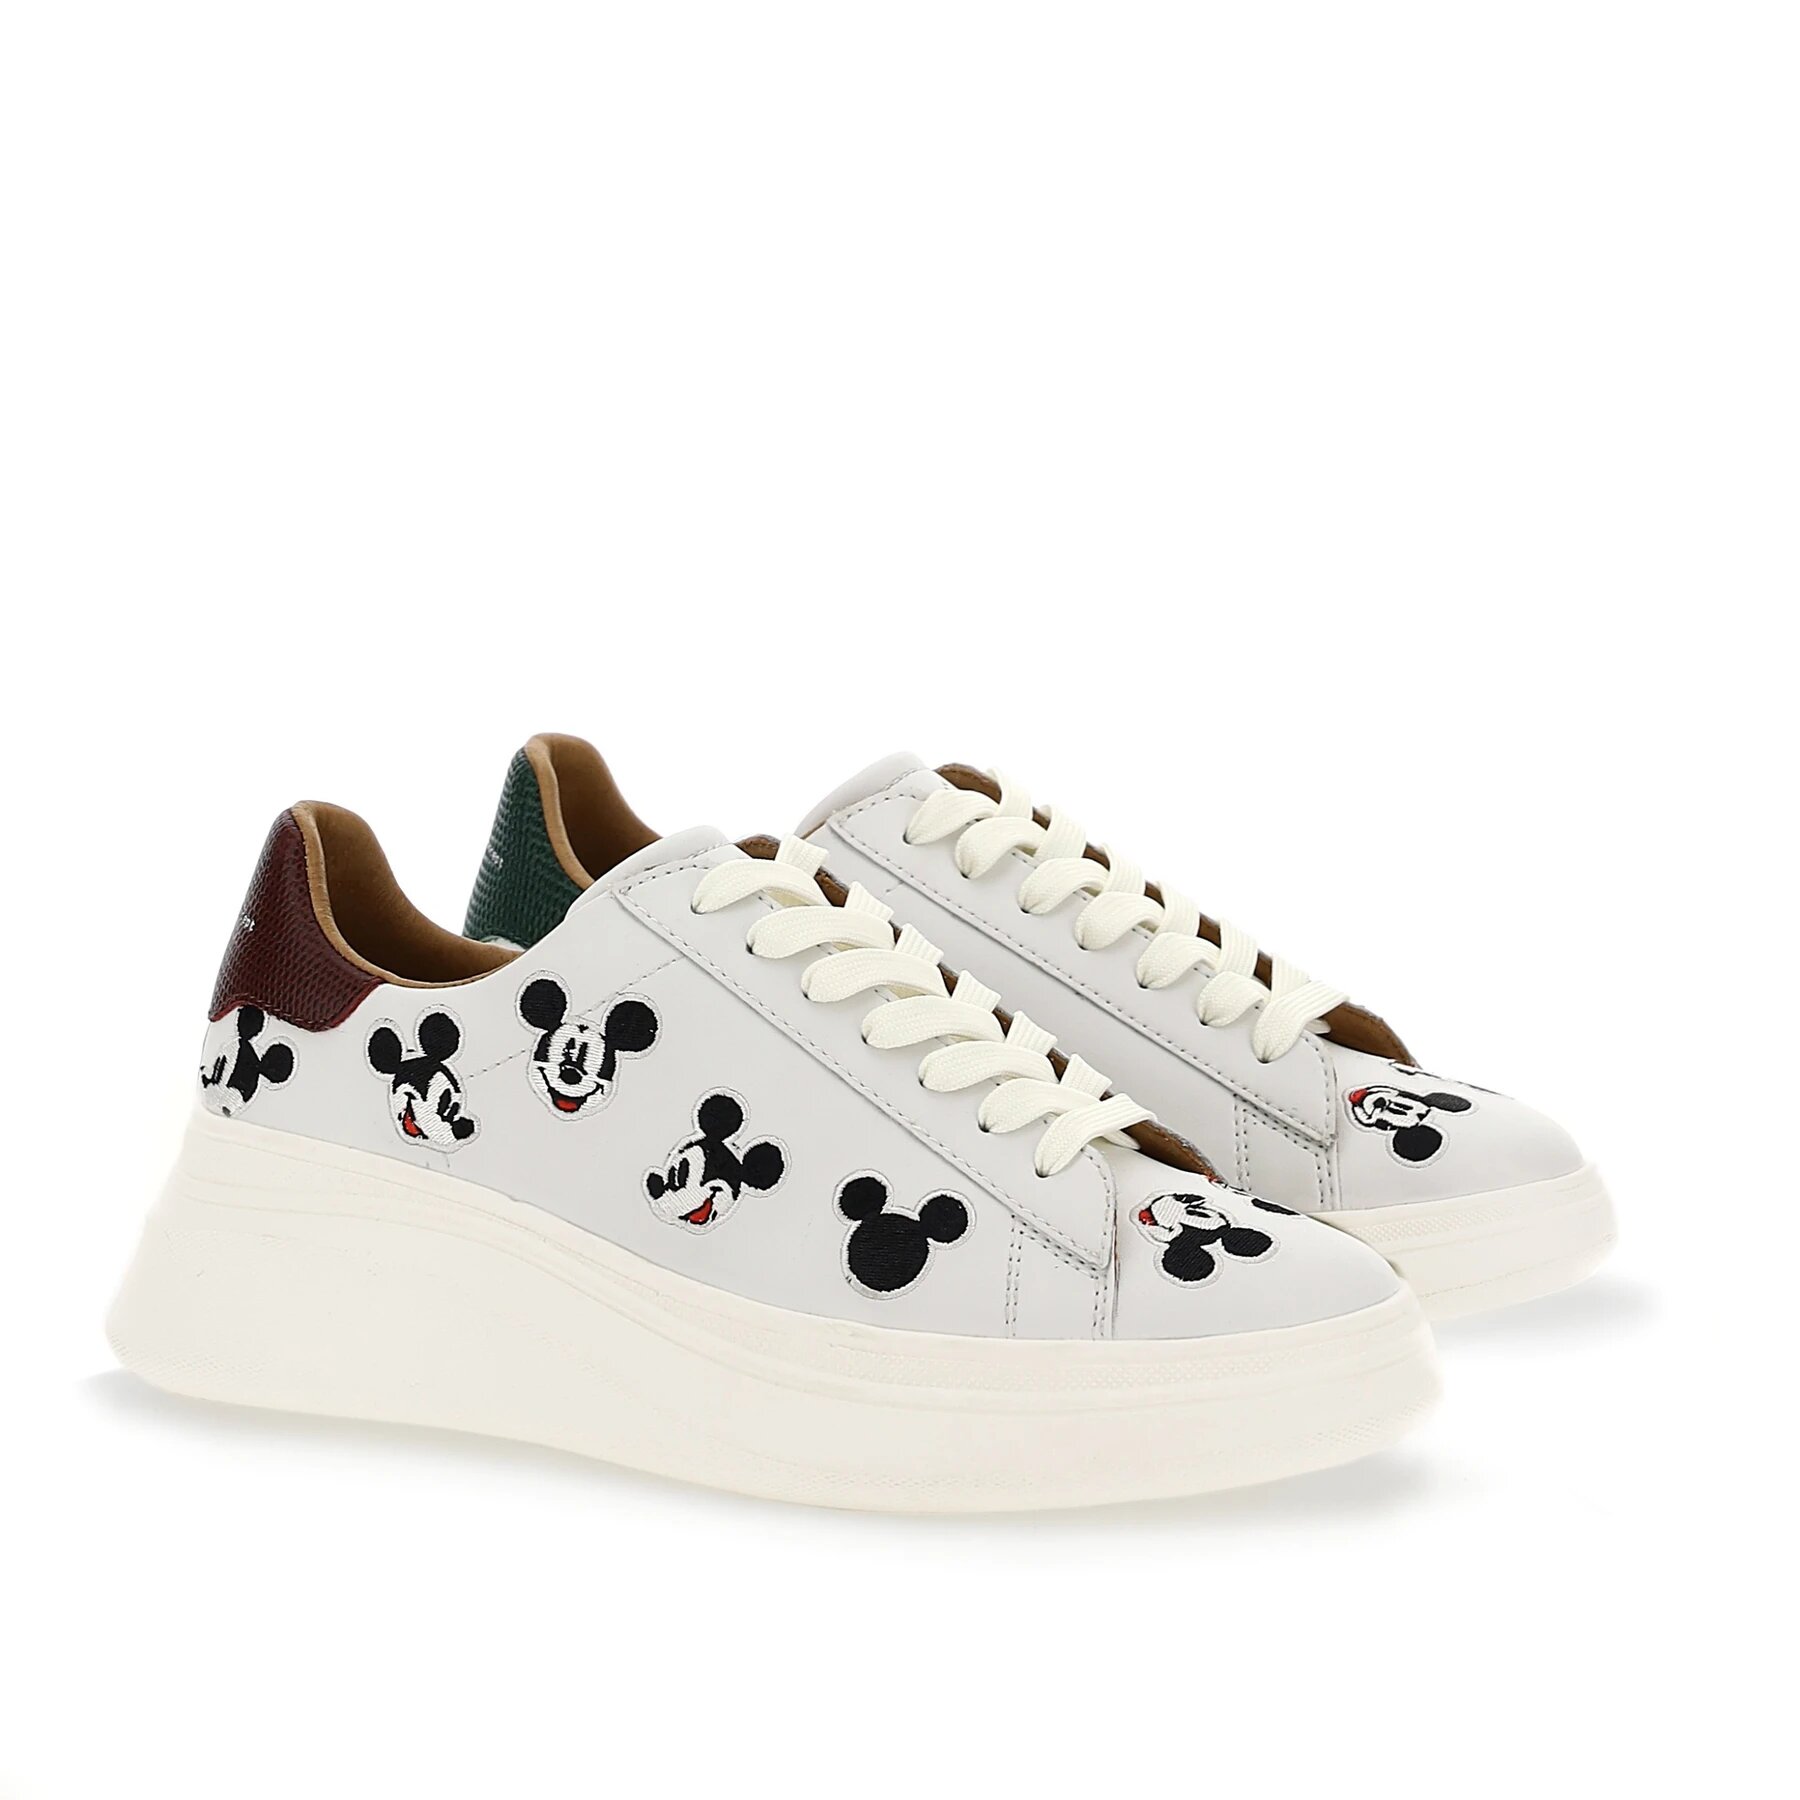 Sneaker blanche (réf.383699) : 195€